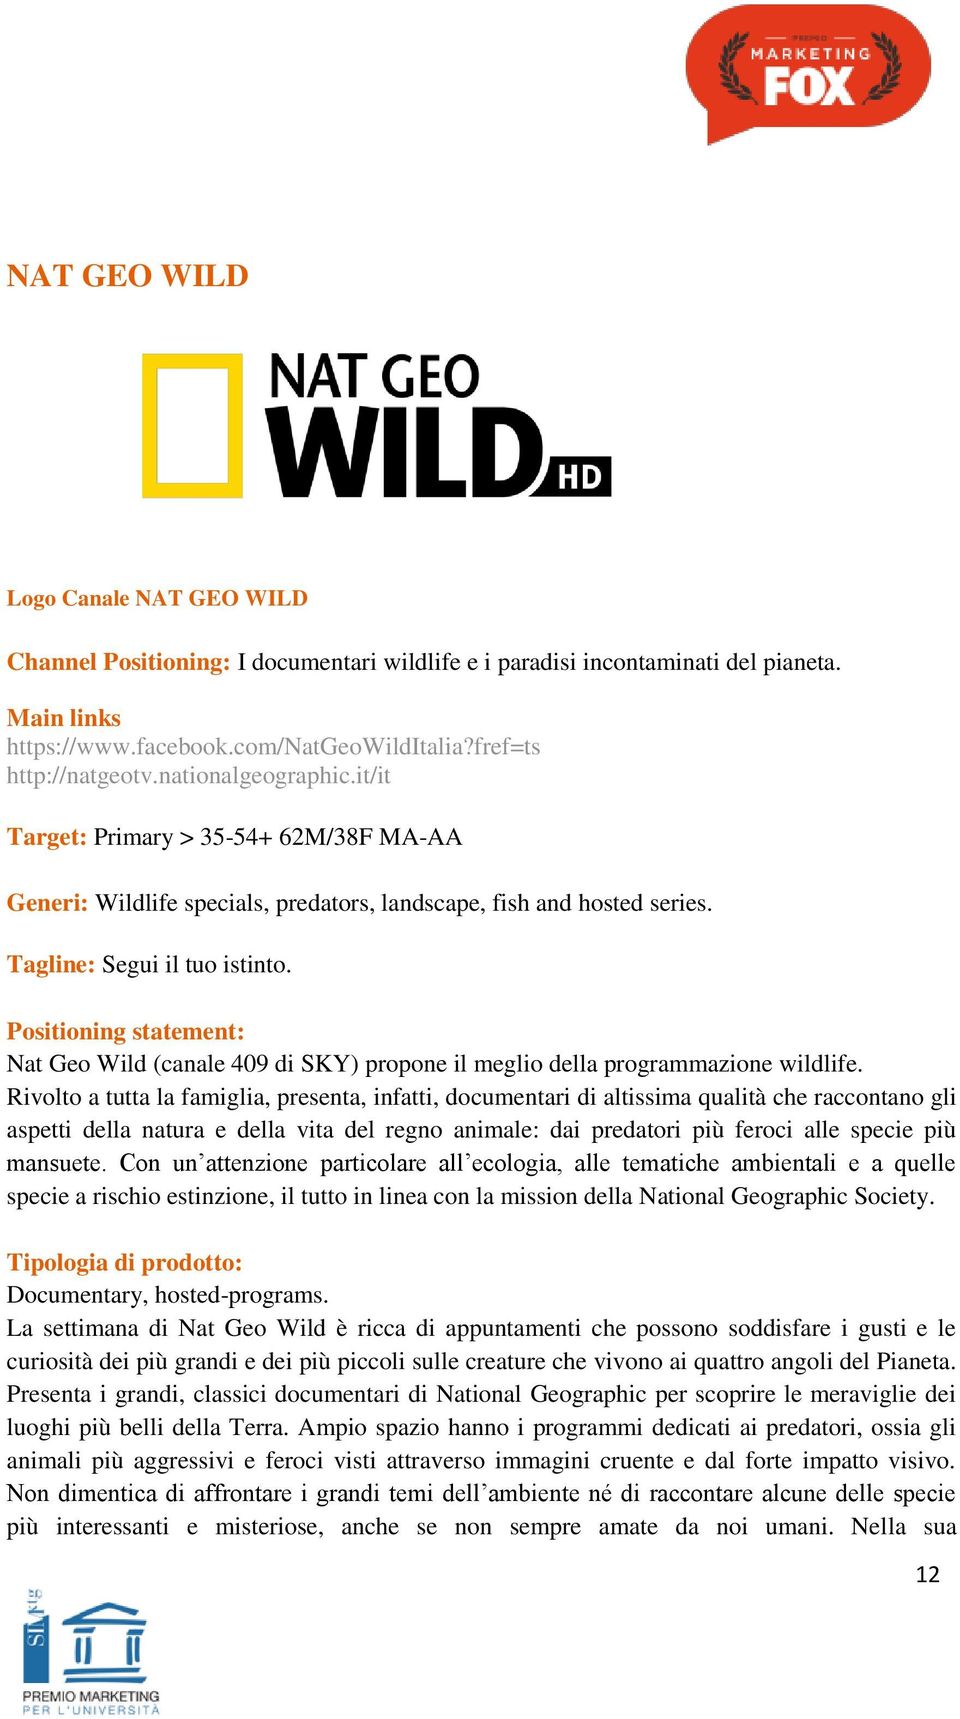 Positioning statement: Nat Geo Wild (canale 409 di SKY) propone il meglio della programmazione wildlife.